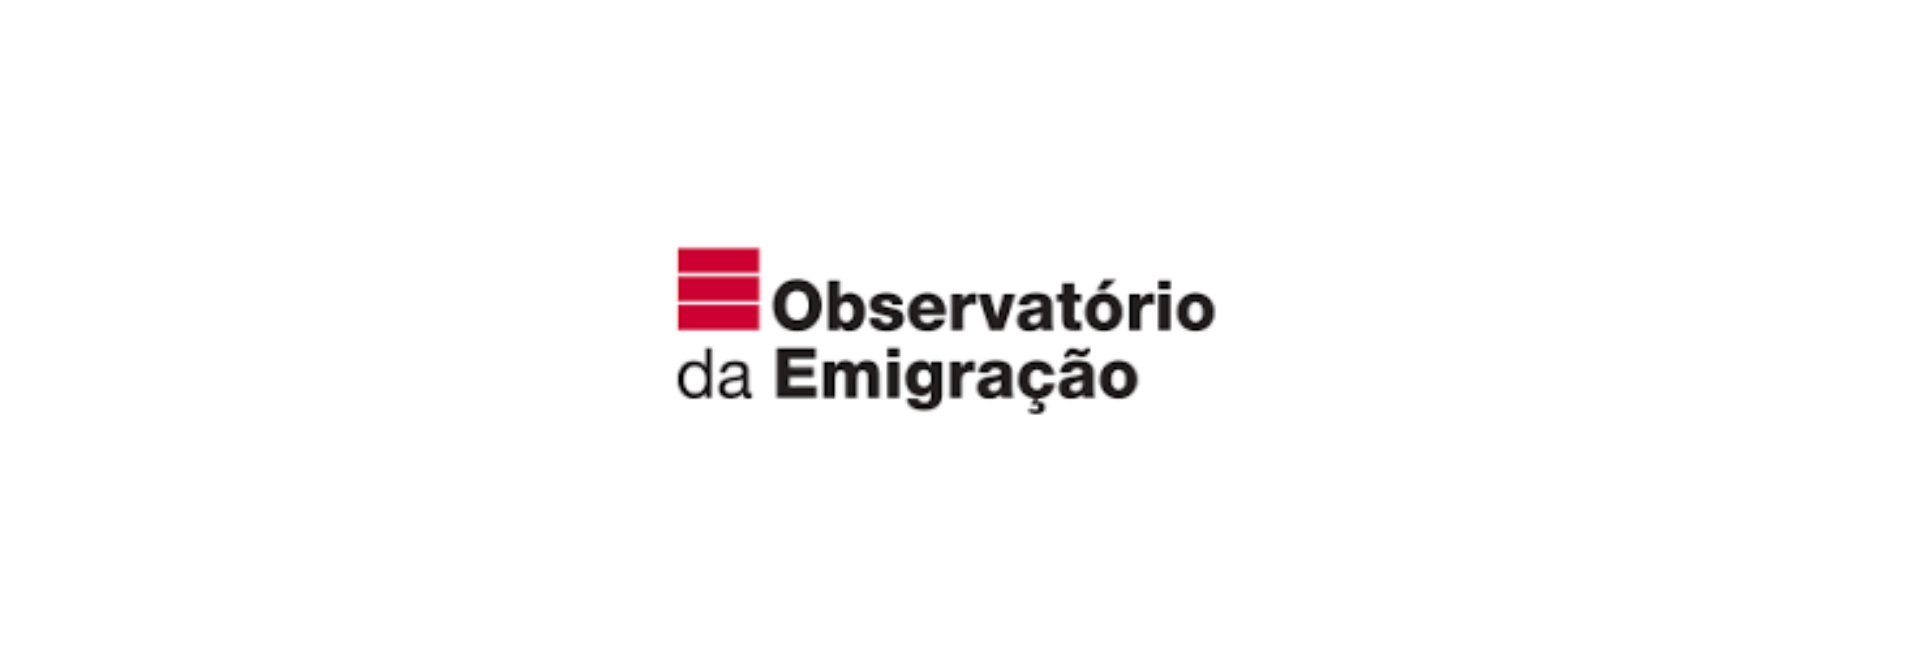 Inquérito a Emigrantes Portugueses Regressados